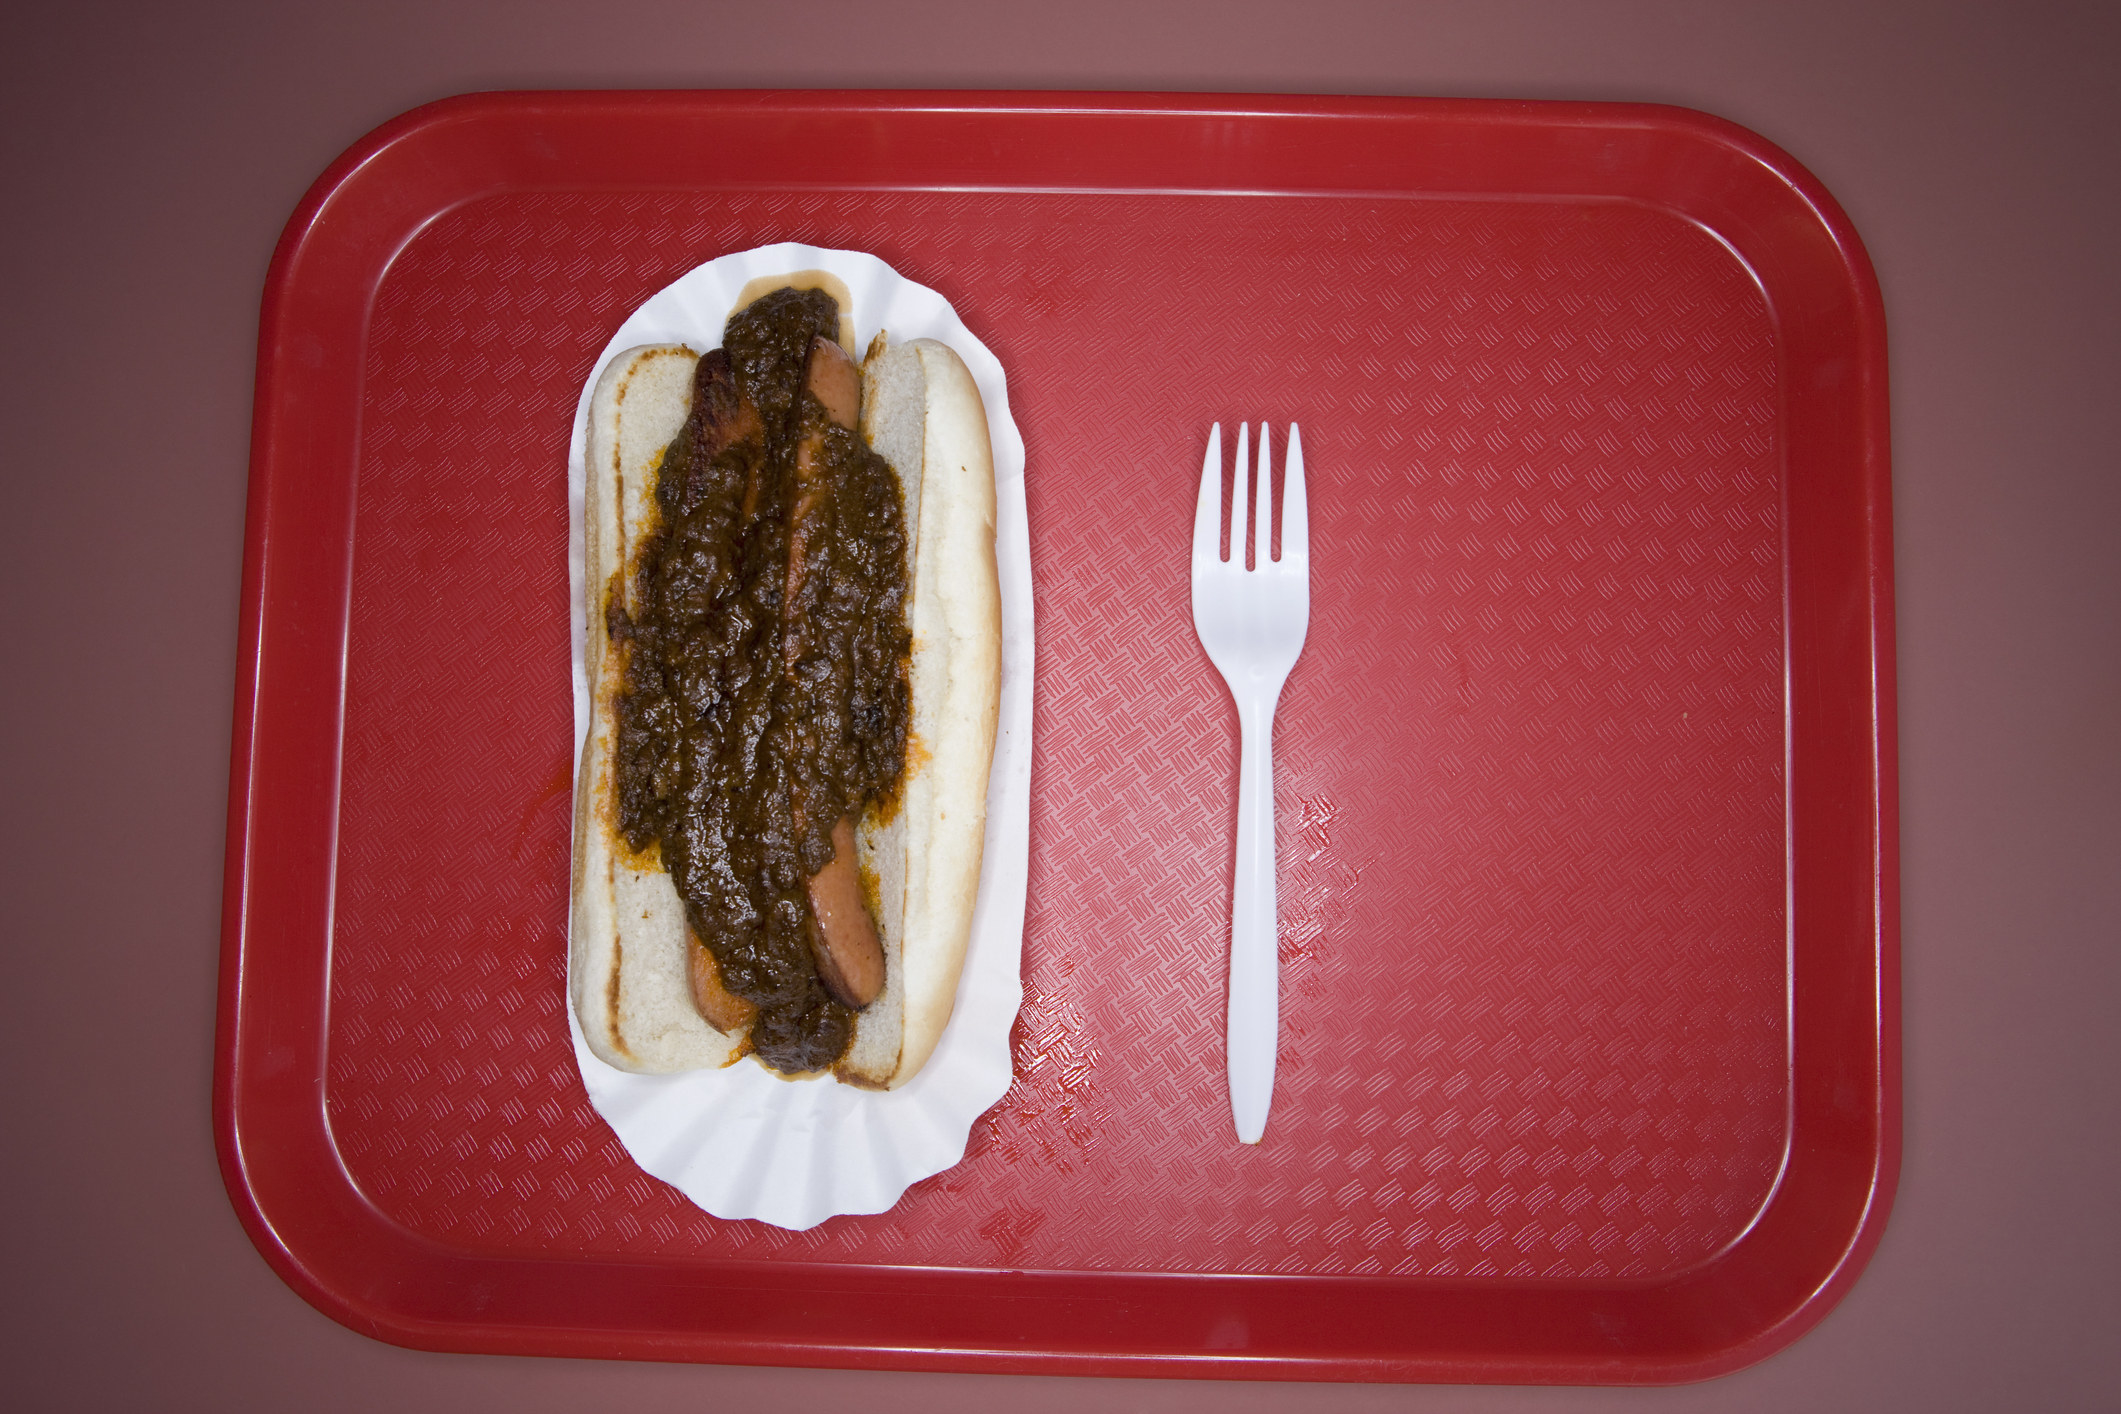 A hot dog on a tray